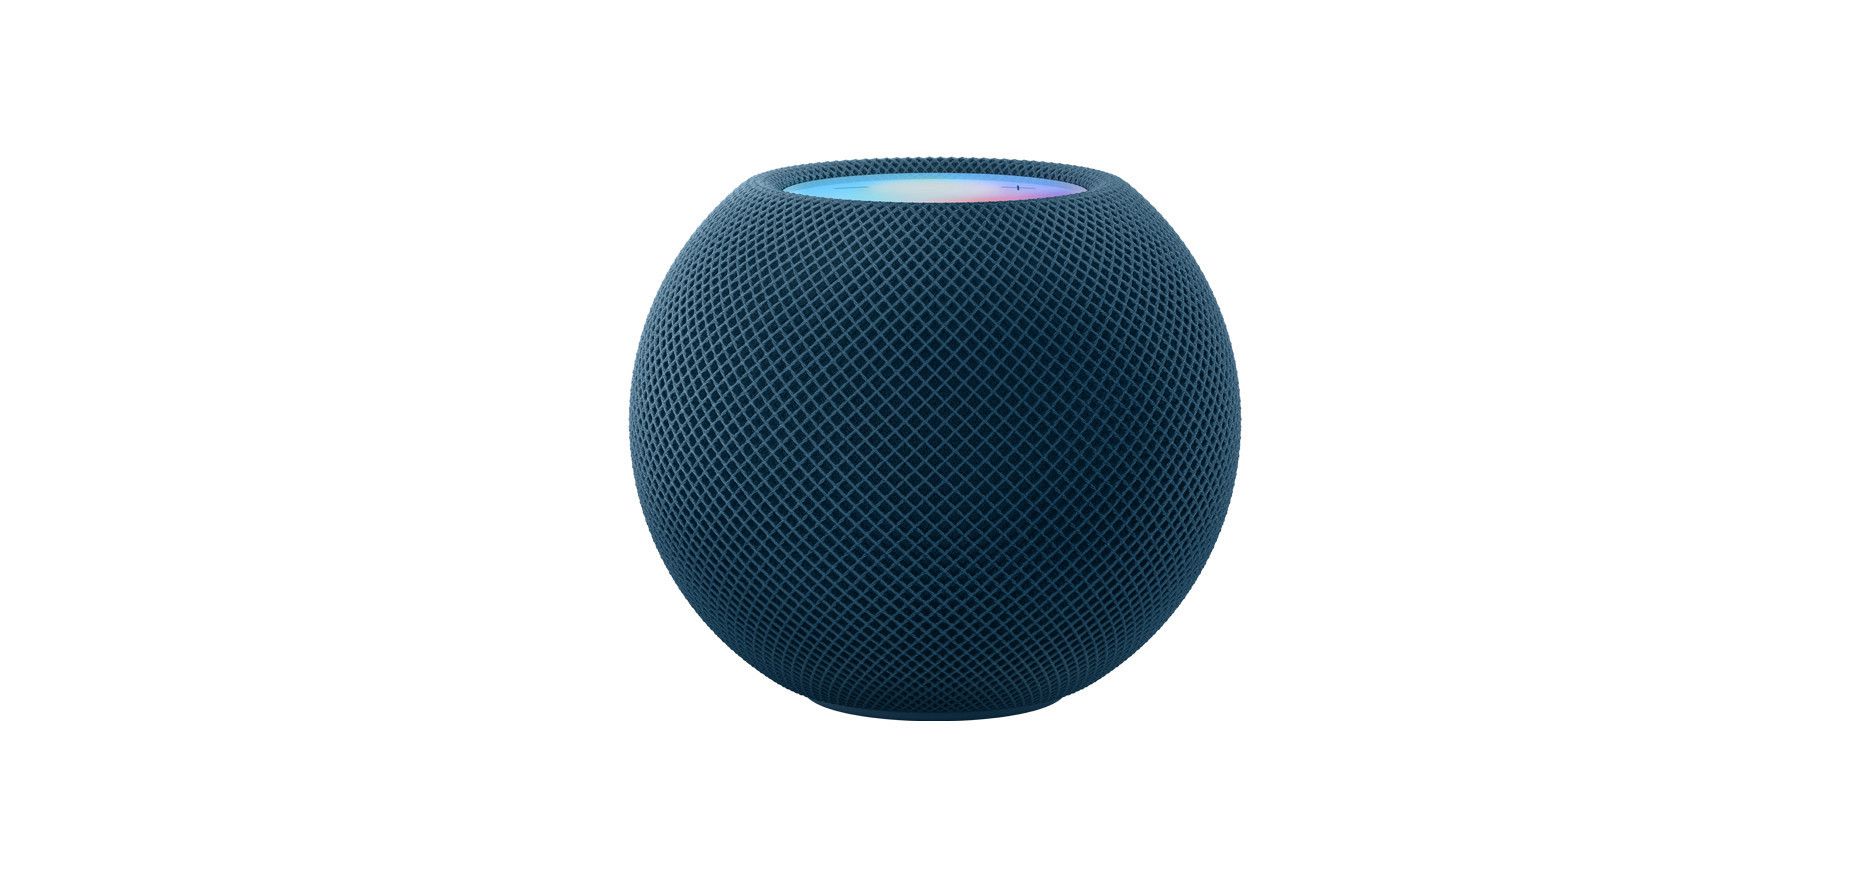 Buy It! Apple HomePod Mini, $99; apple.com https://www.apple.com/shop/buy-homepod/homepod-mini/blue